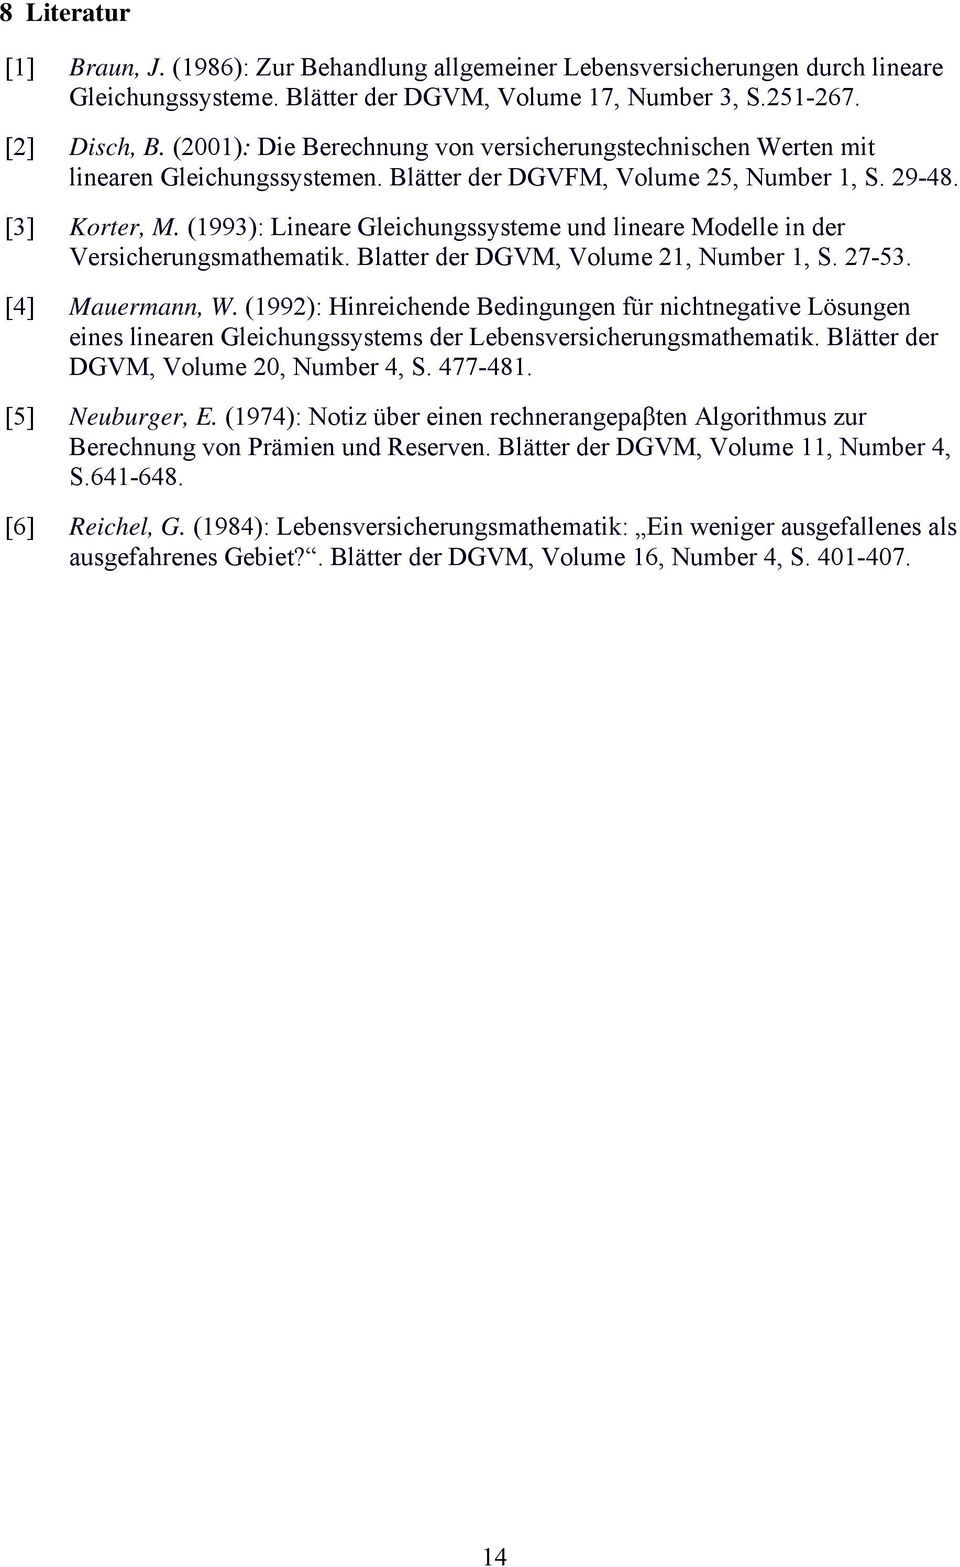 Blaer der GVM, Volume 2, Number, S 27-53 [4] Mauermann, W (992): Hinreichende Bedingungen für nichnegaive Lösungen eines linearen Gleichungssysems der Lebensversicherungsmahemaik Bläer der GVM,